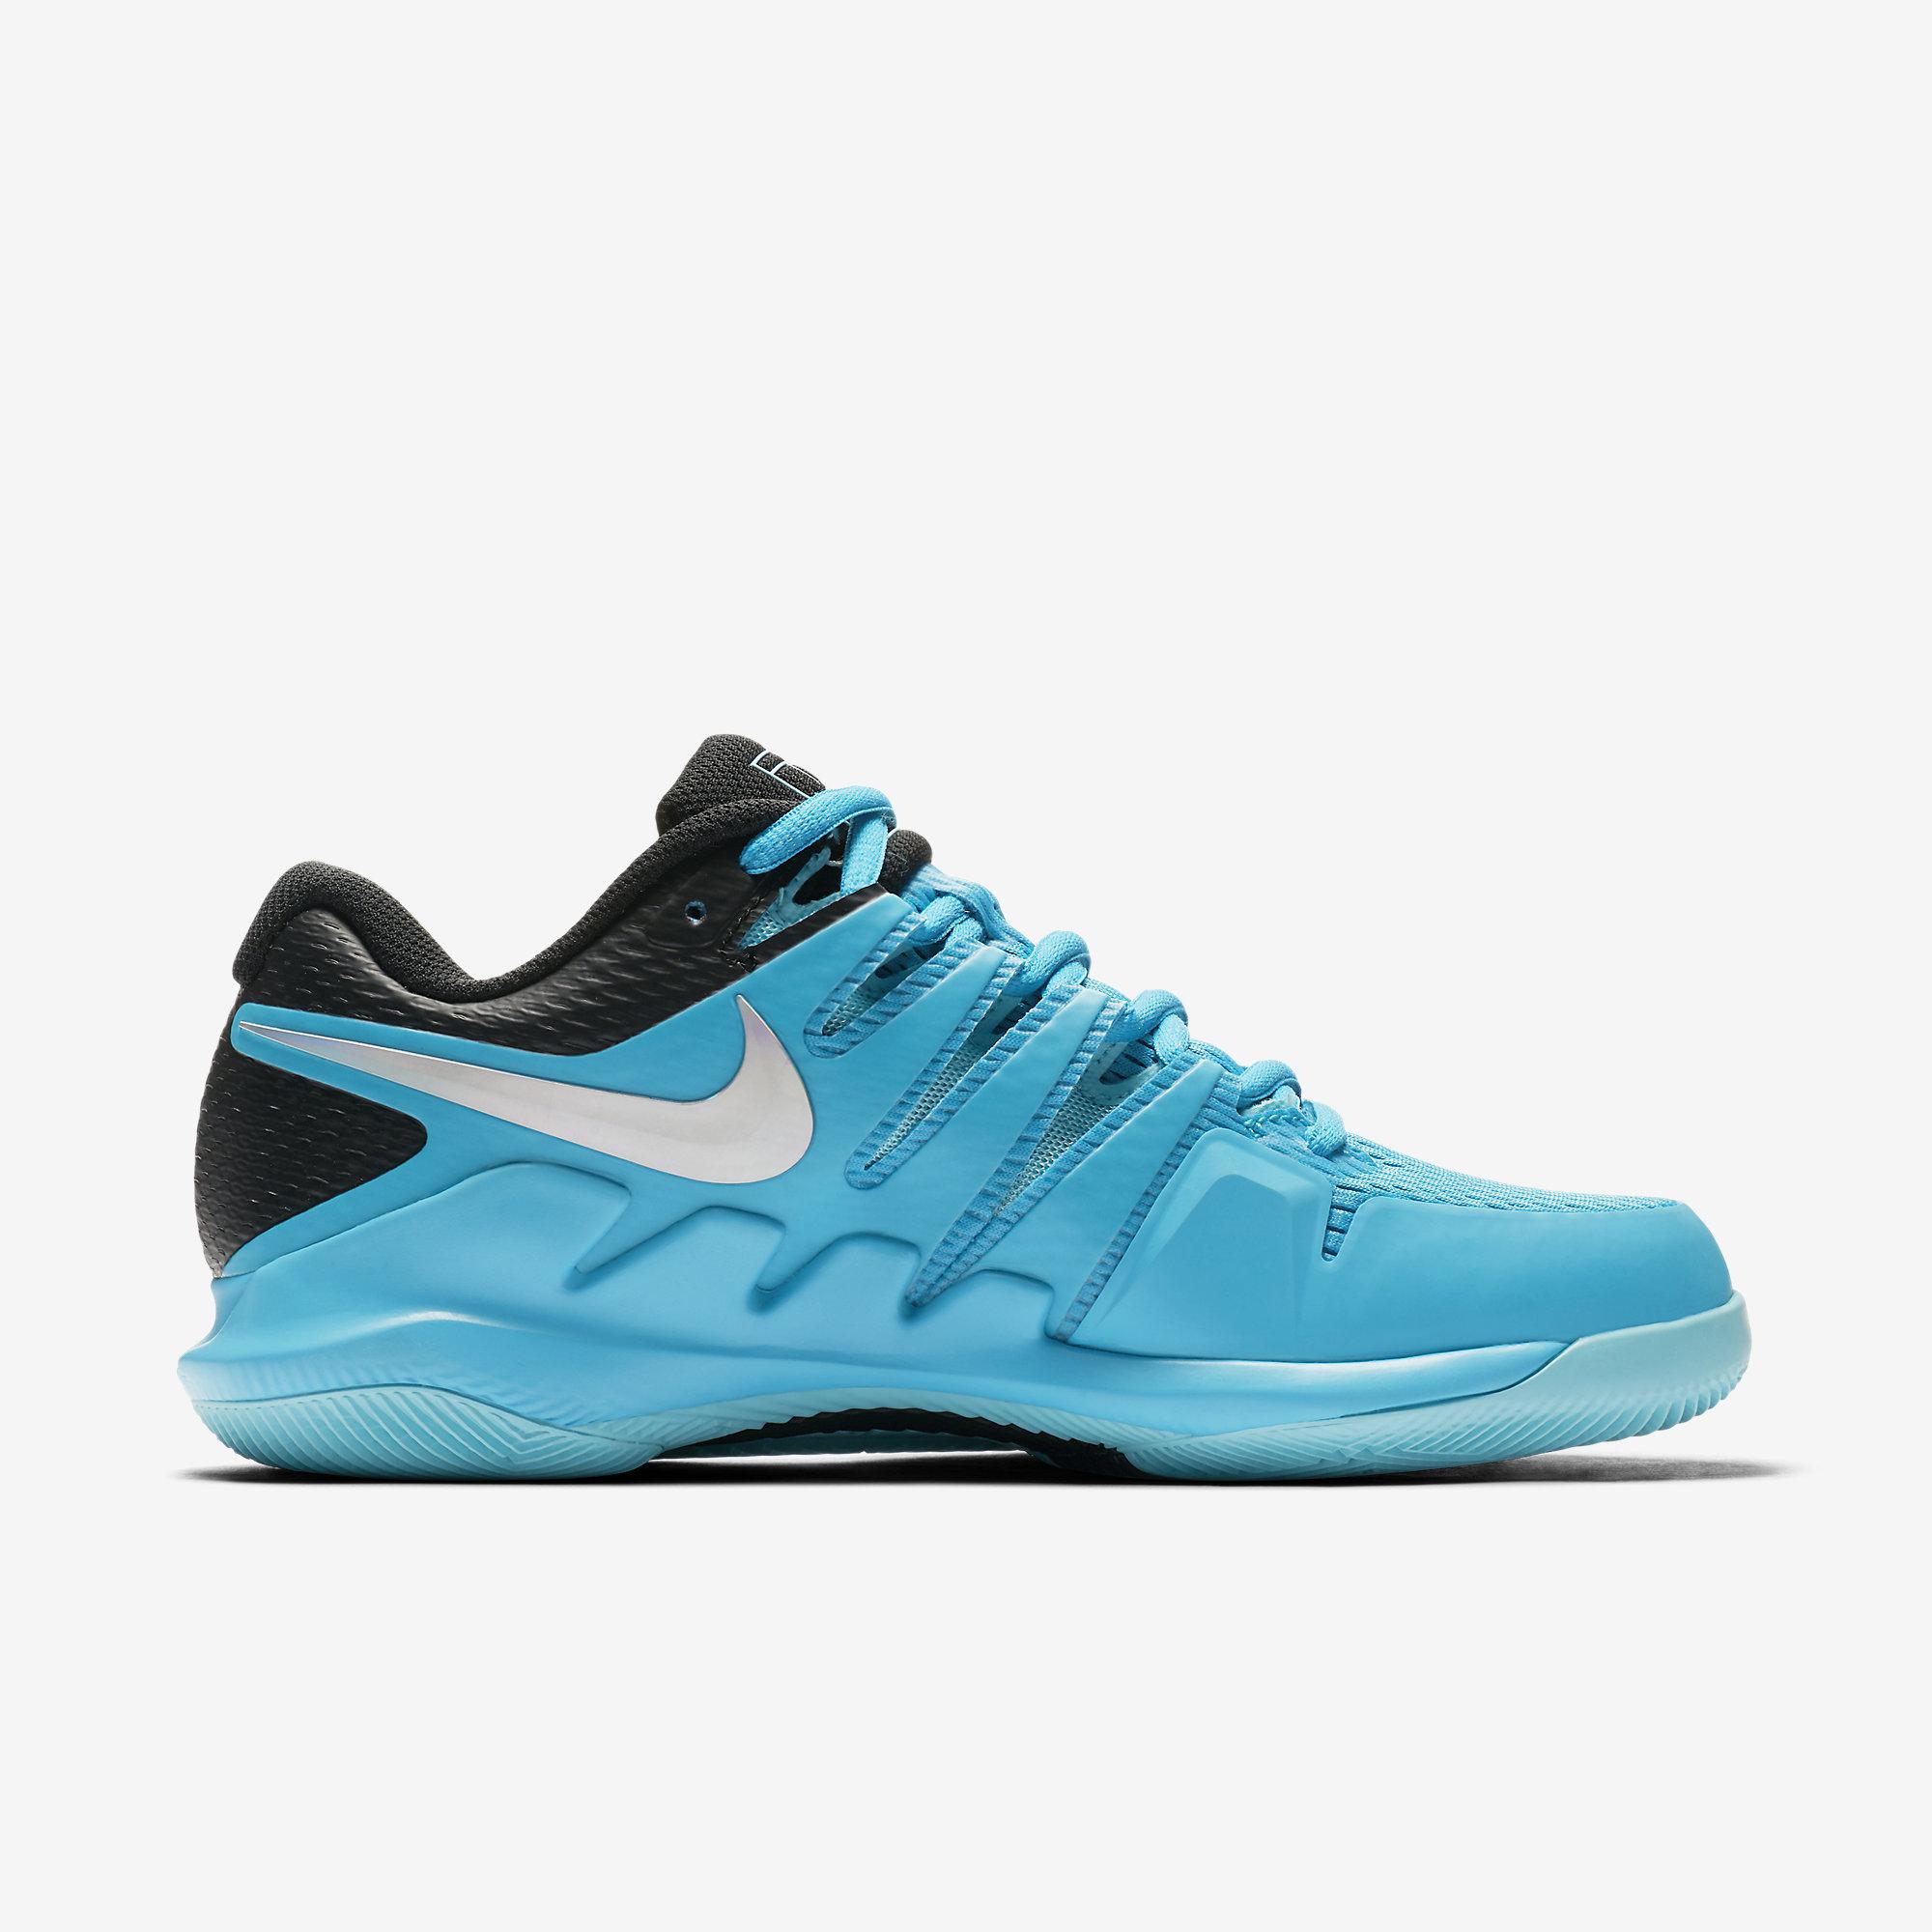 Nike Womens Air Zoom Vapor X Tennis Shoes - Light Blue Fury/Black ...